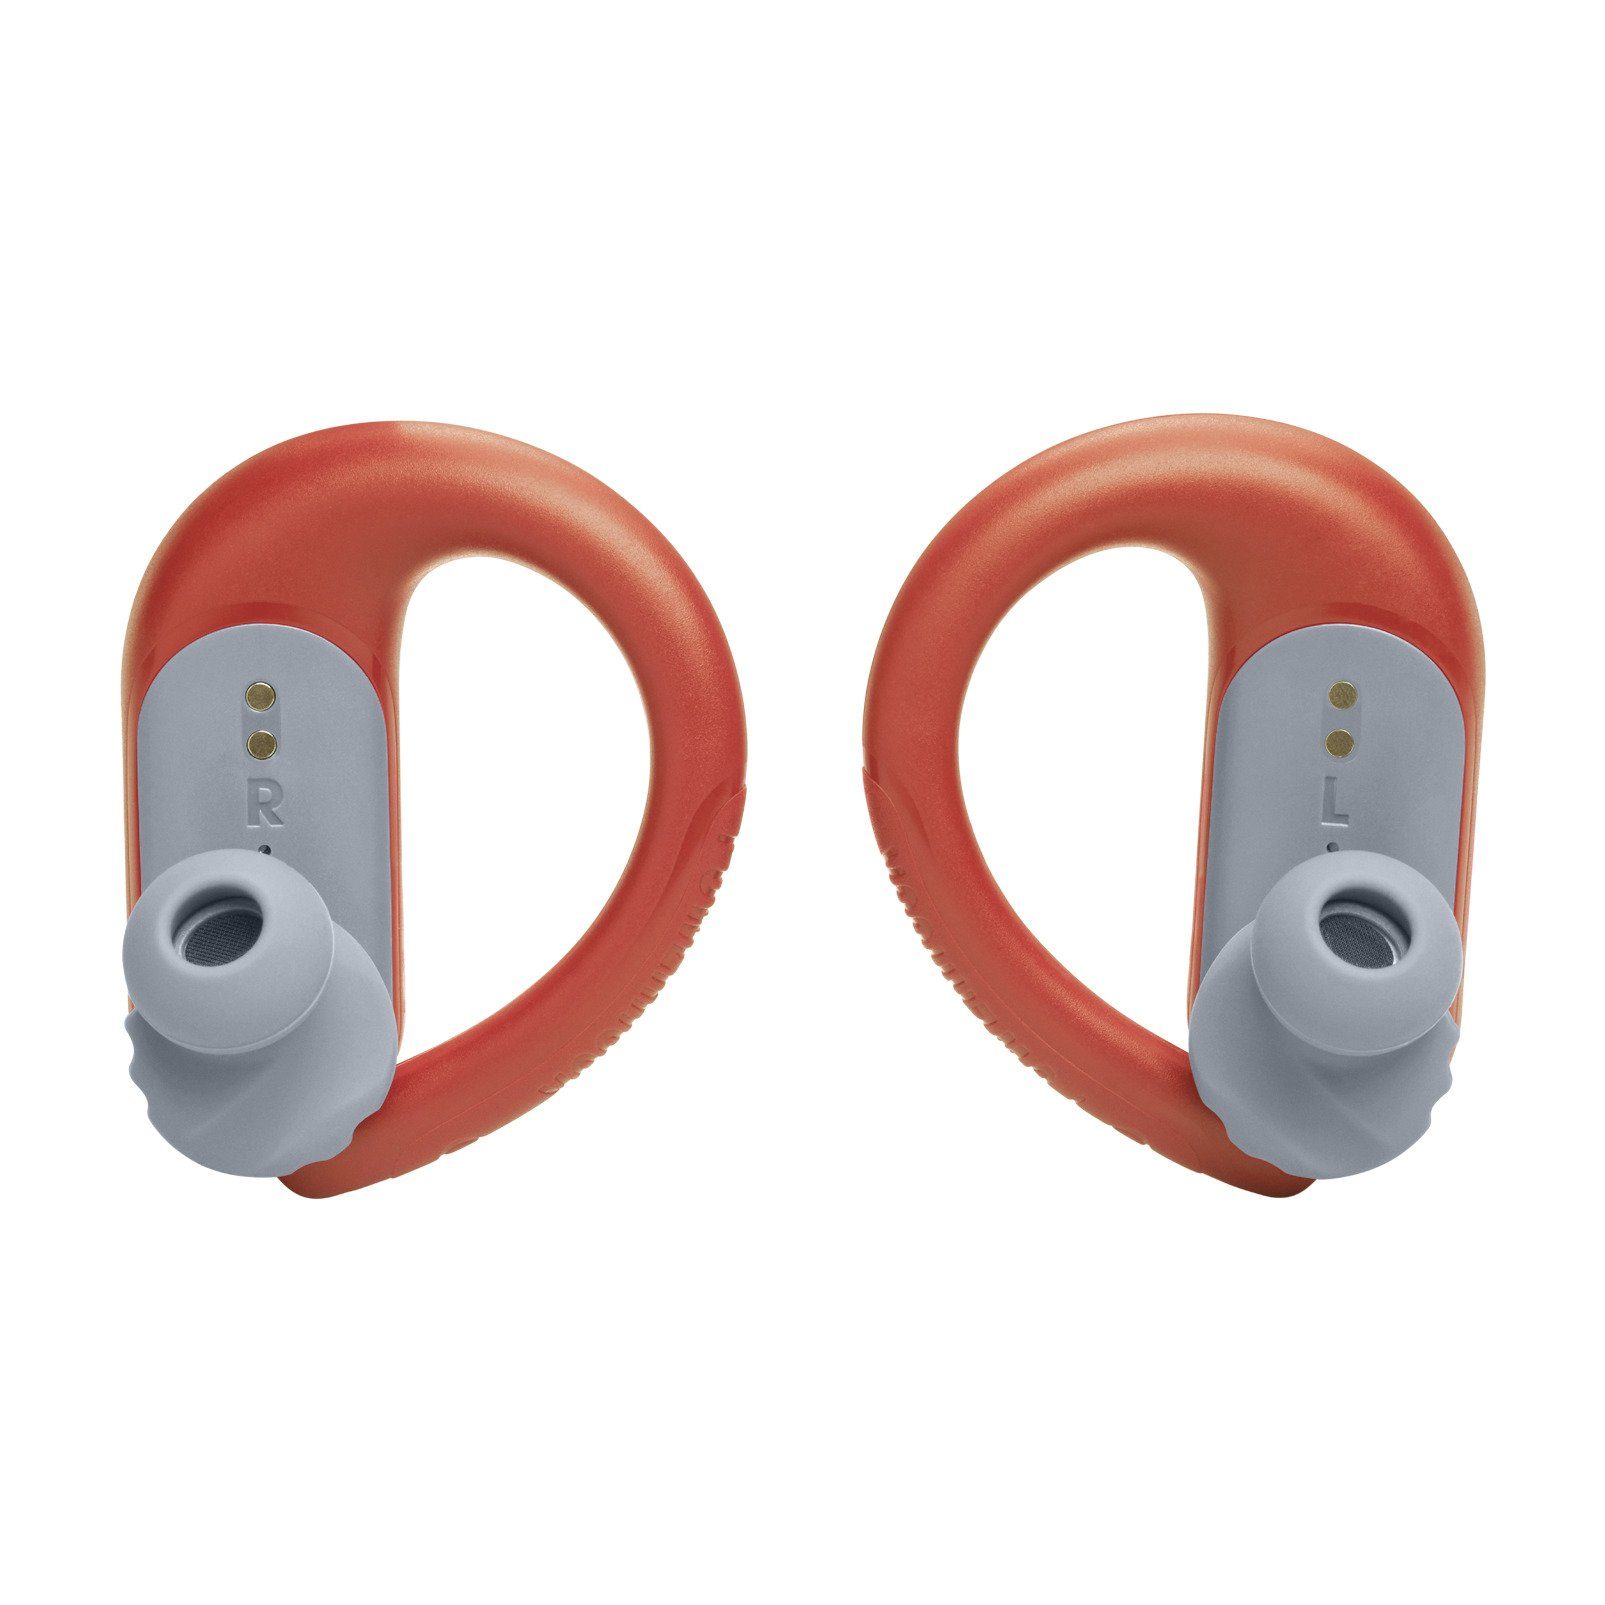 JBL Endurance PEAK 3 - TW Sport Earbuds wireless In-Ear-Kopfhörer | In-Ear-Kopfhörer